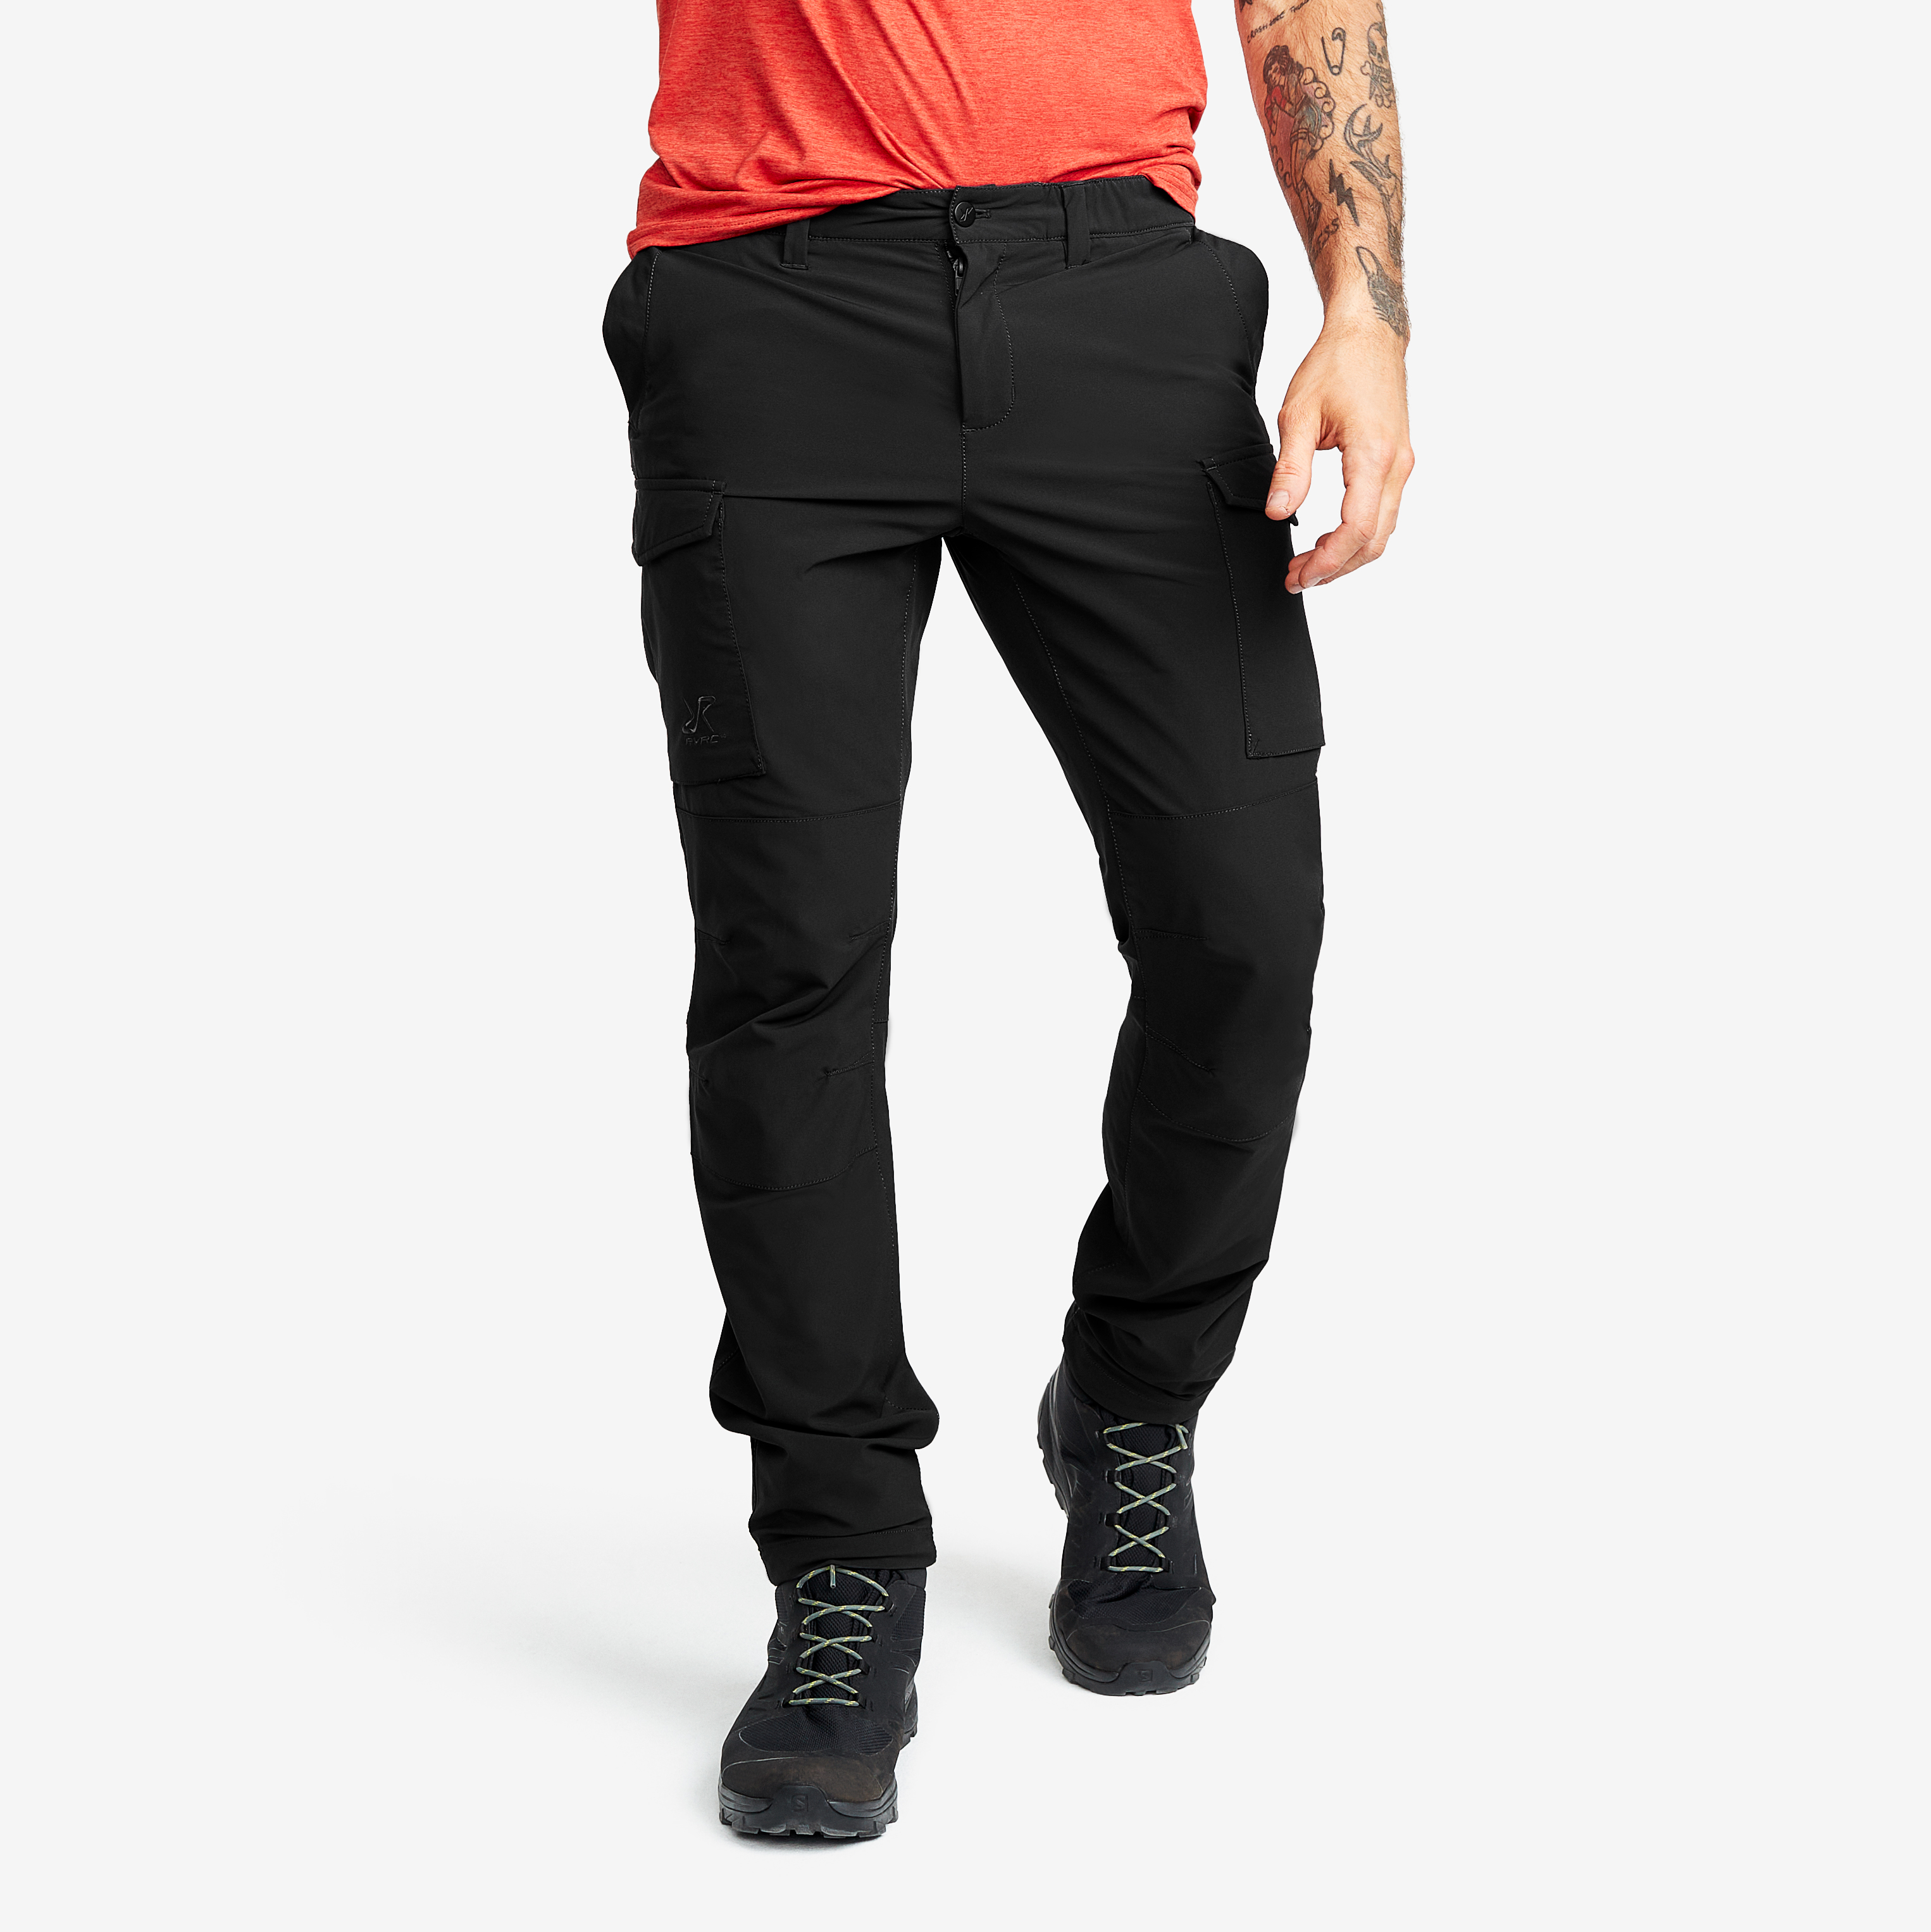 Coolmance Stretch Pants, Stretchactive - Men's Ultra Stretch Cargo Pants